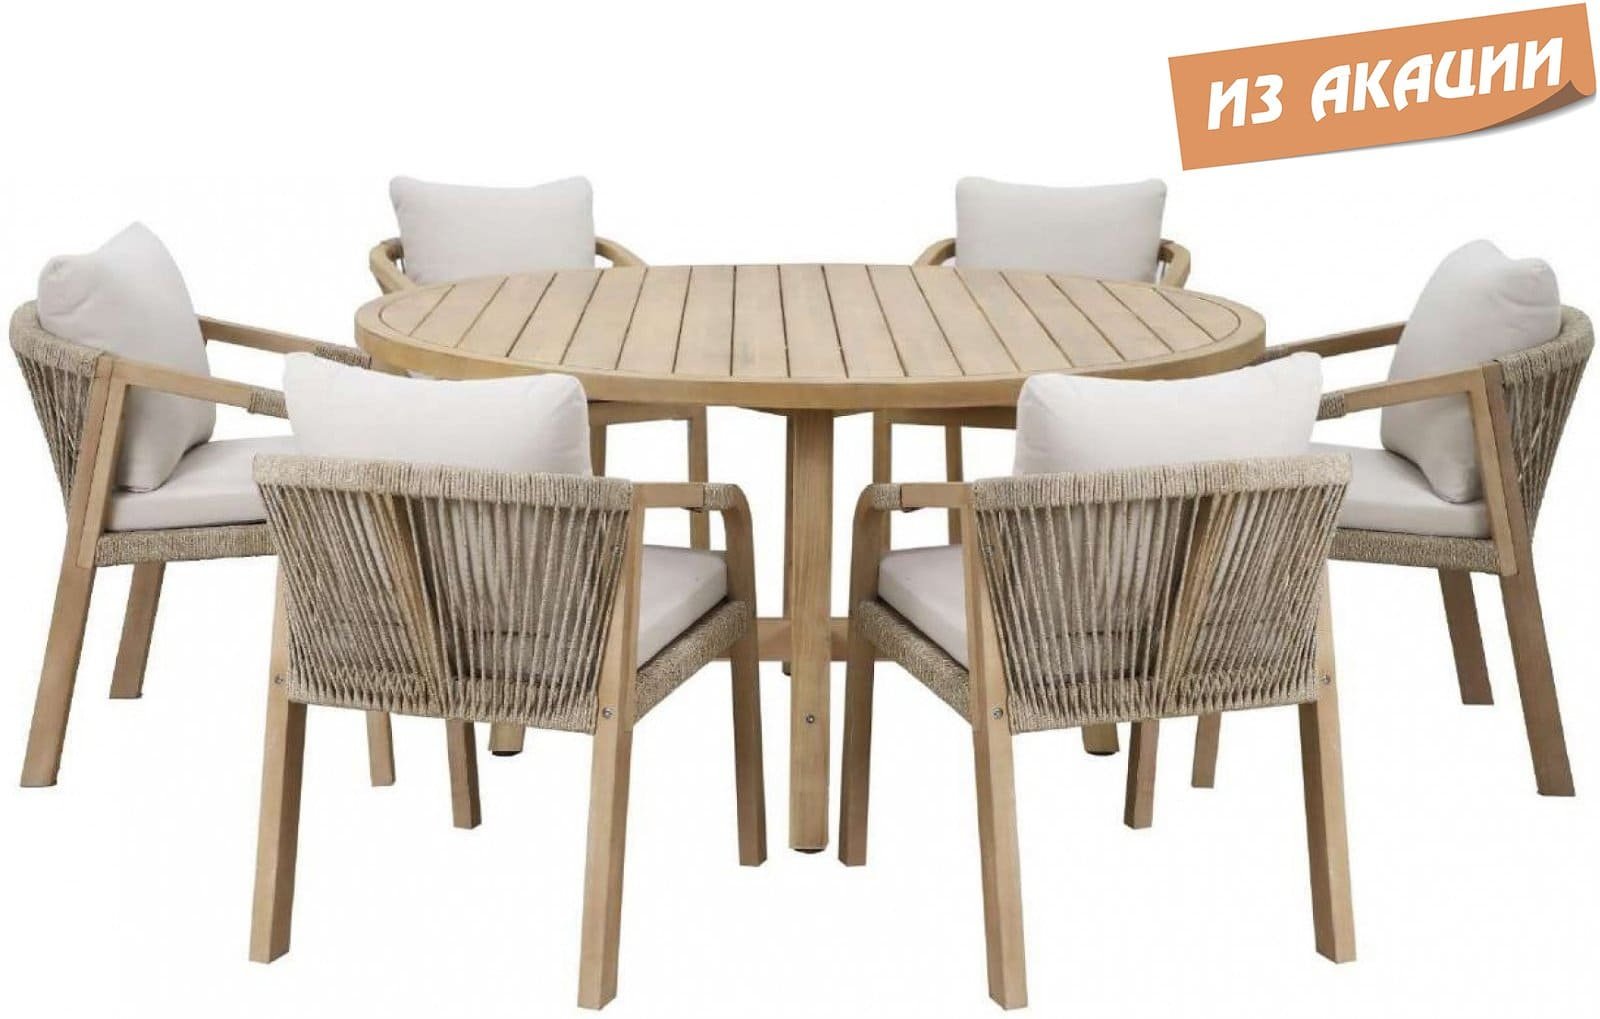 Комплект деревянной мебели Ravona KD из АКАЦИИ (стол Ø150 см + 6 кресел)